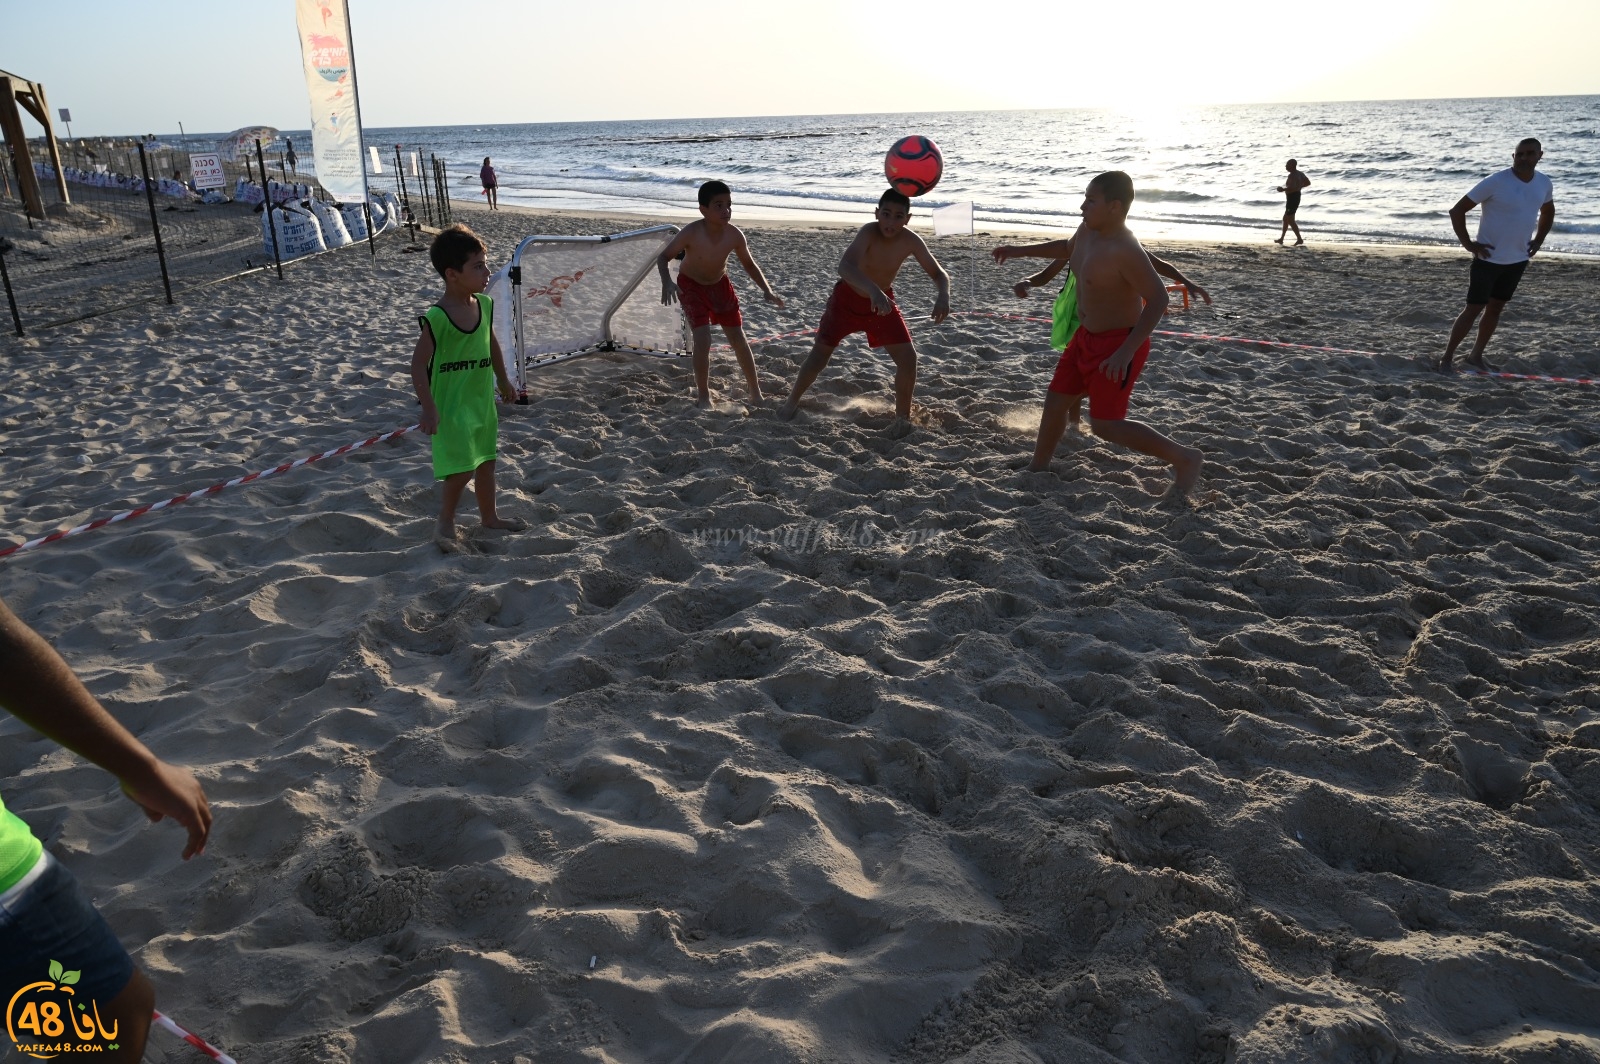 ألعاب ممتعة ضمن فعاليات خميس بالريف على شاطئ بحر الجبلية